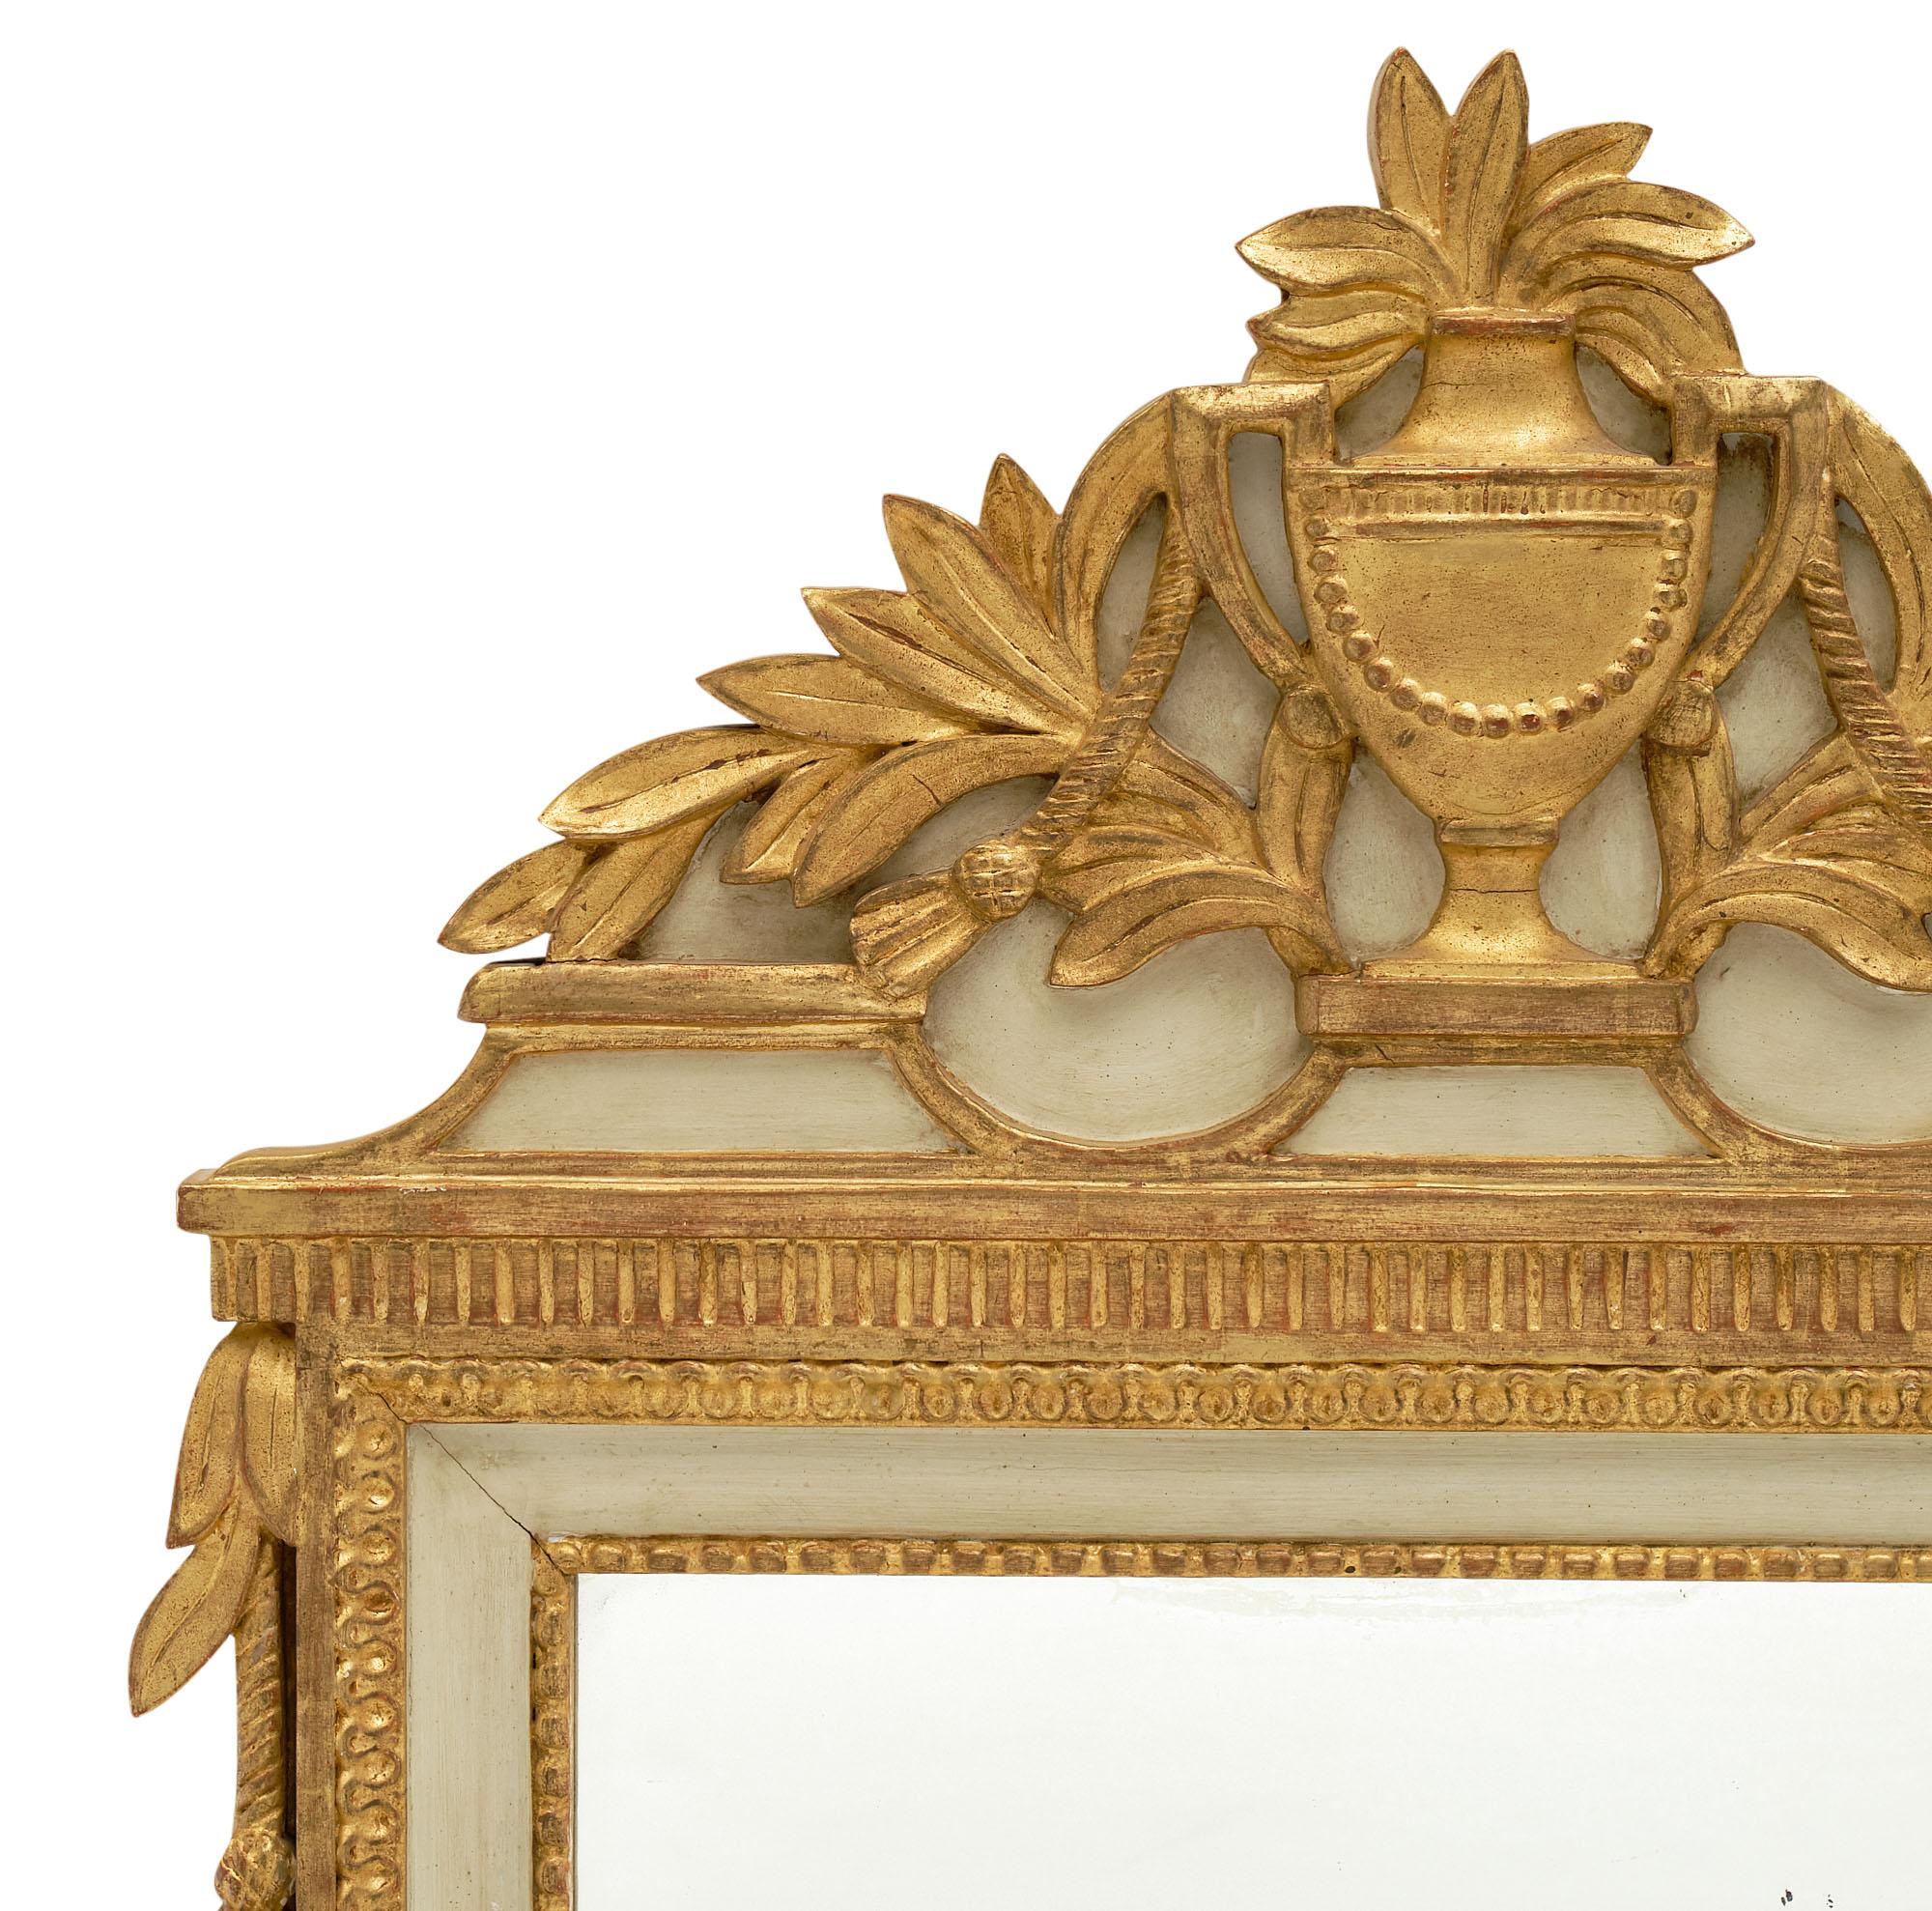 Miroir ancien français de style Louis XVI avec un décor complexe d'une urne classique et de branches de laurier. La feuille d'or 23 carats et la peinture d'origine vert amande clair lui confèrent un aspect classique et magnifique. Il est entièrement